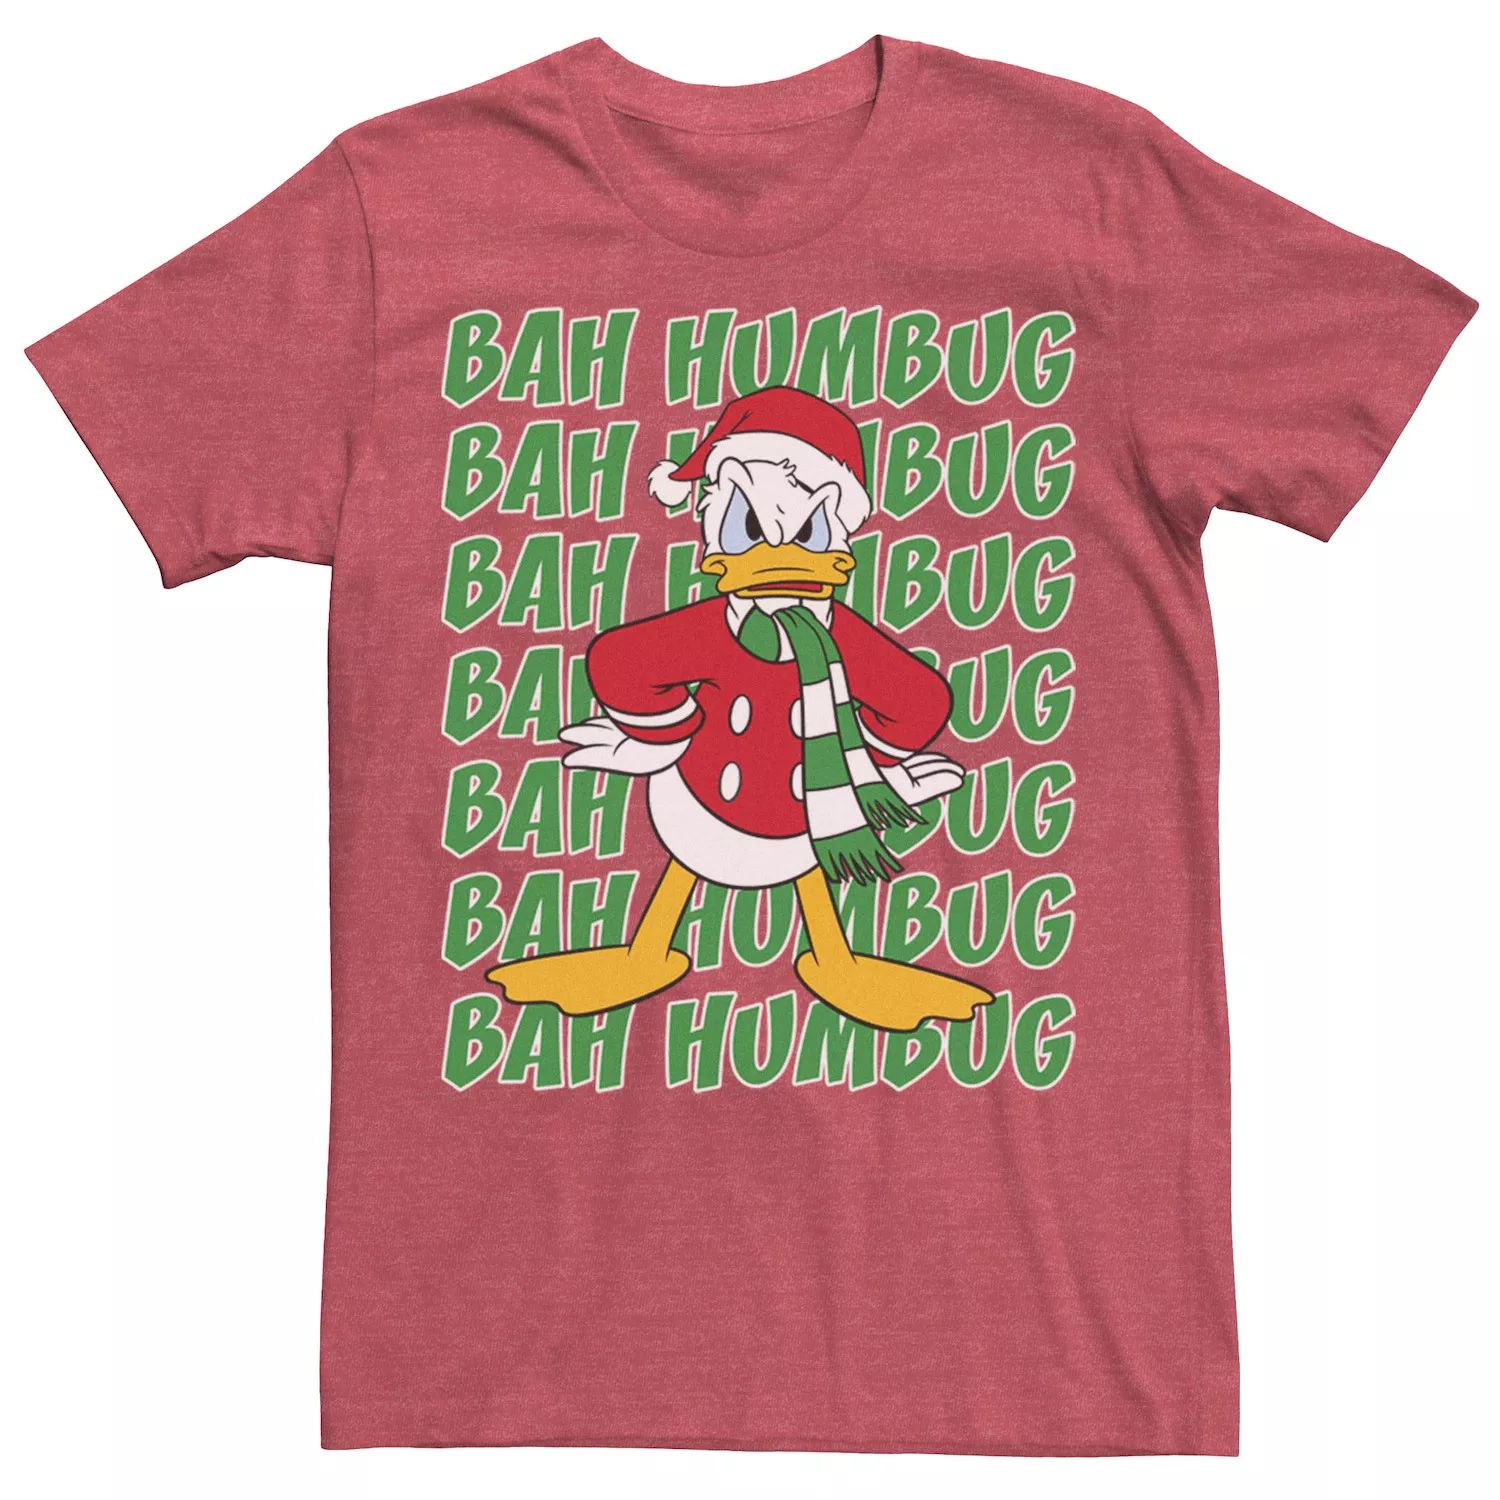 Мужская футболка Donald Duck Bah Humbug с рождественским текстом Disney